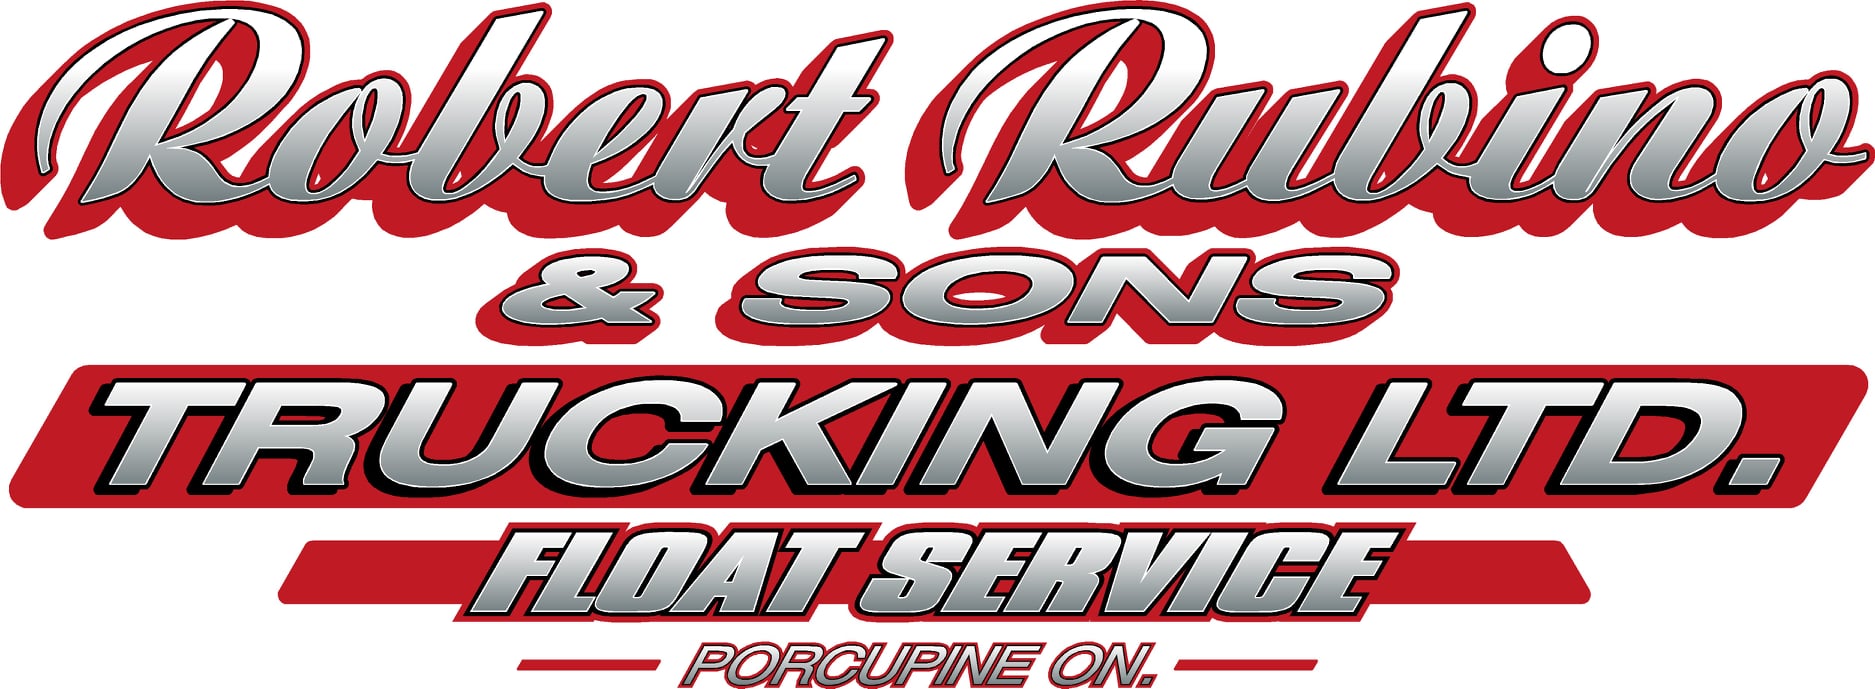 Robert Rubino & Sons Trucking Ltd.